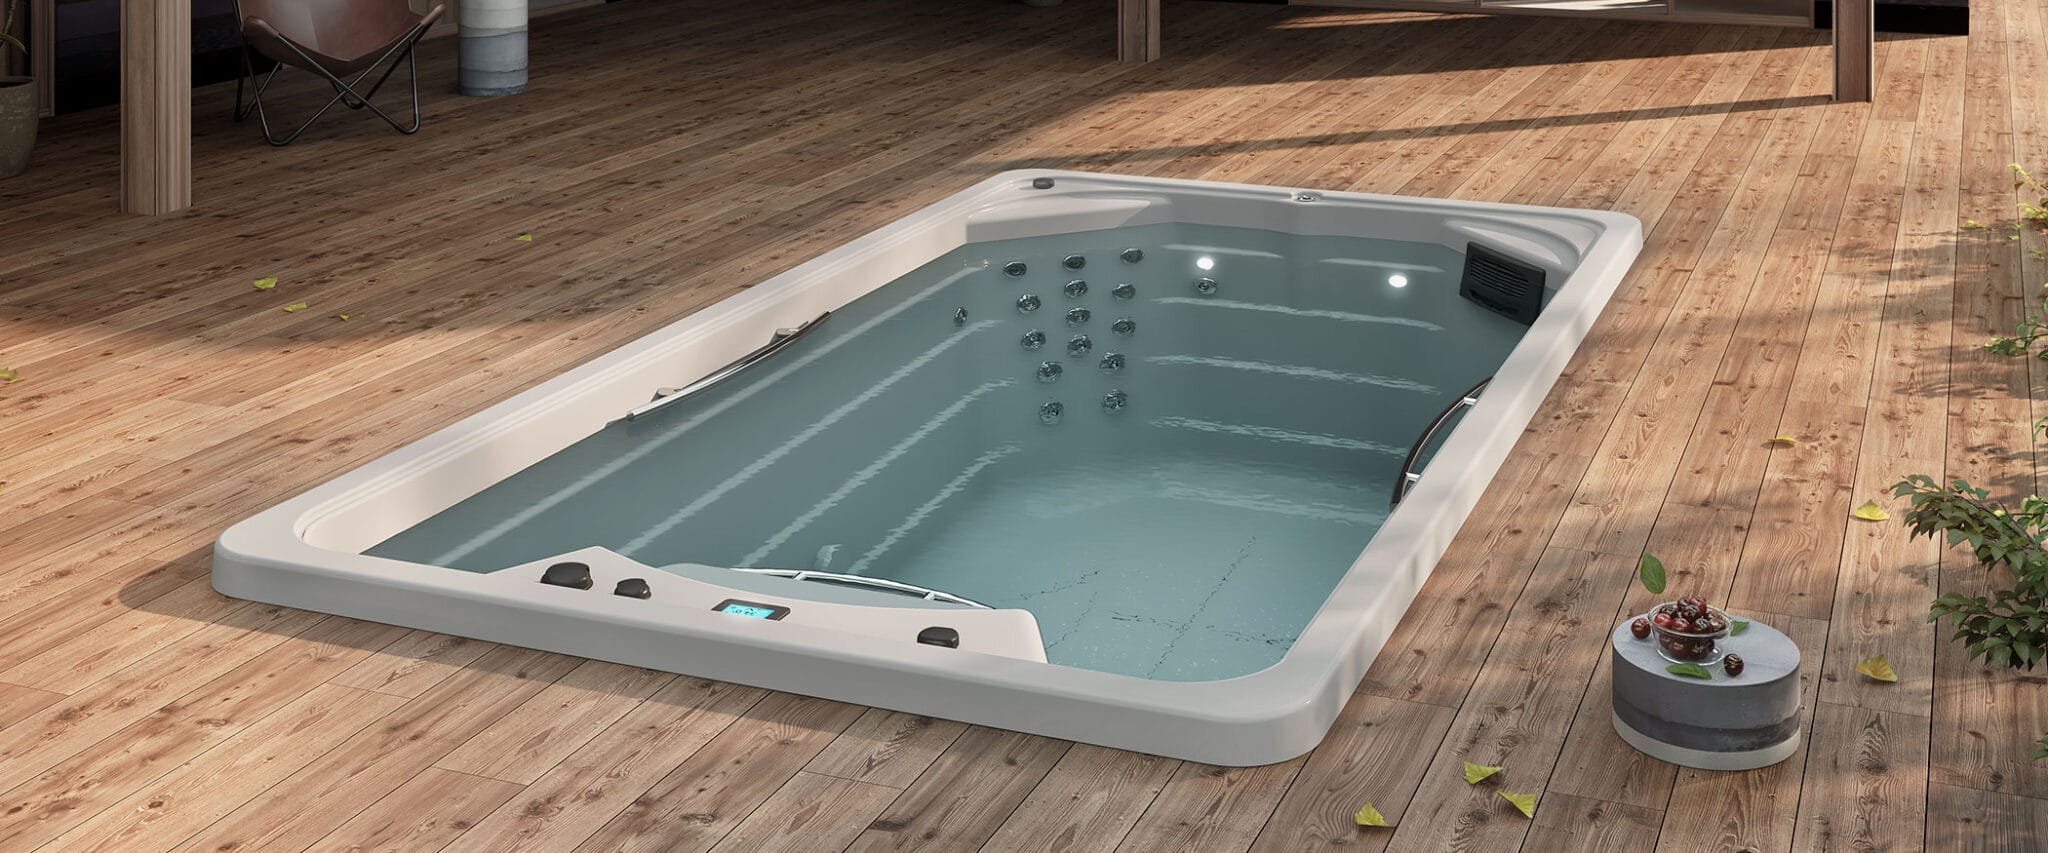 Spa nage - compact-pool-inground - Aquavia